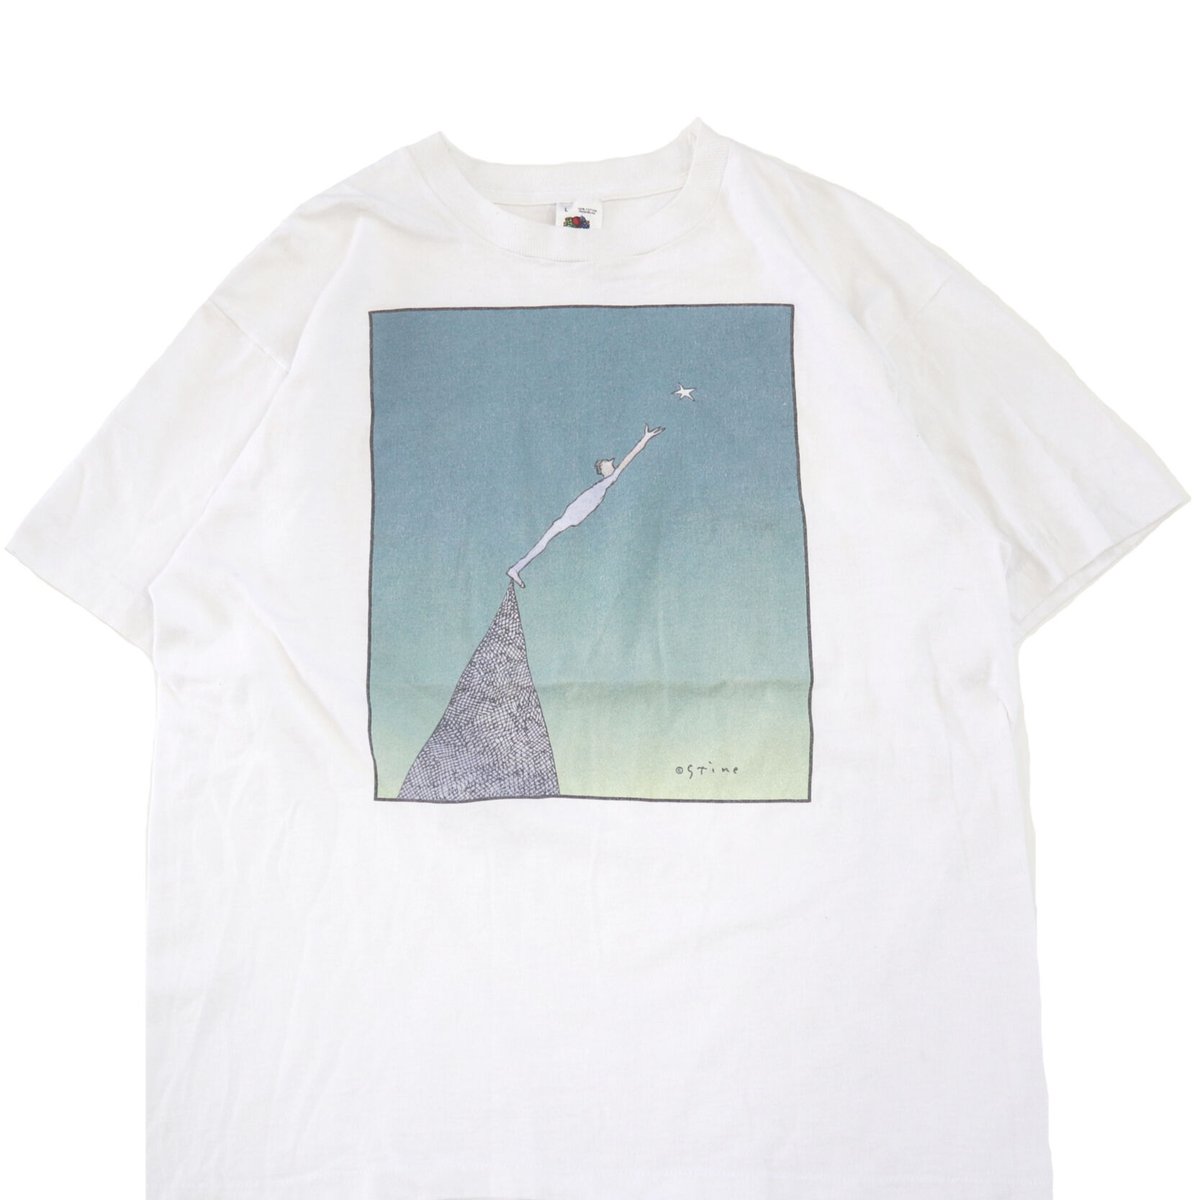 90s リチャード スタイン アート Tシャツ USA製 ビンテージ